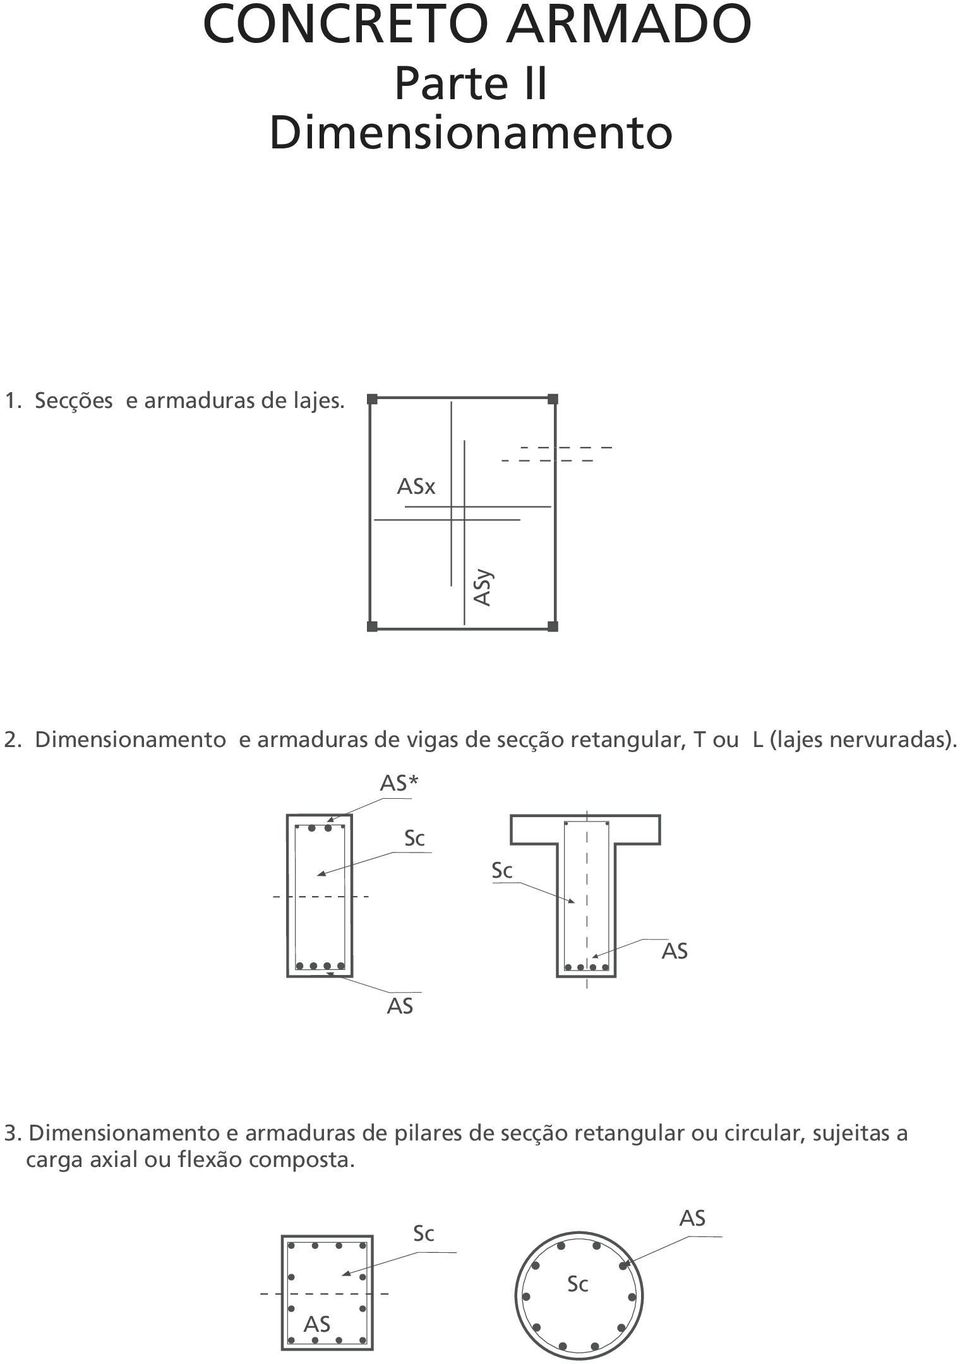 Dimensionamento e armaduras de vigas de secção retangular, T ou L